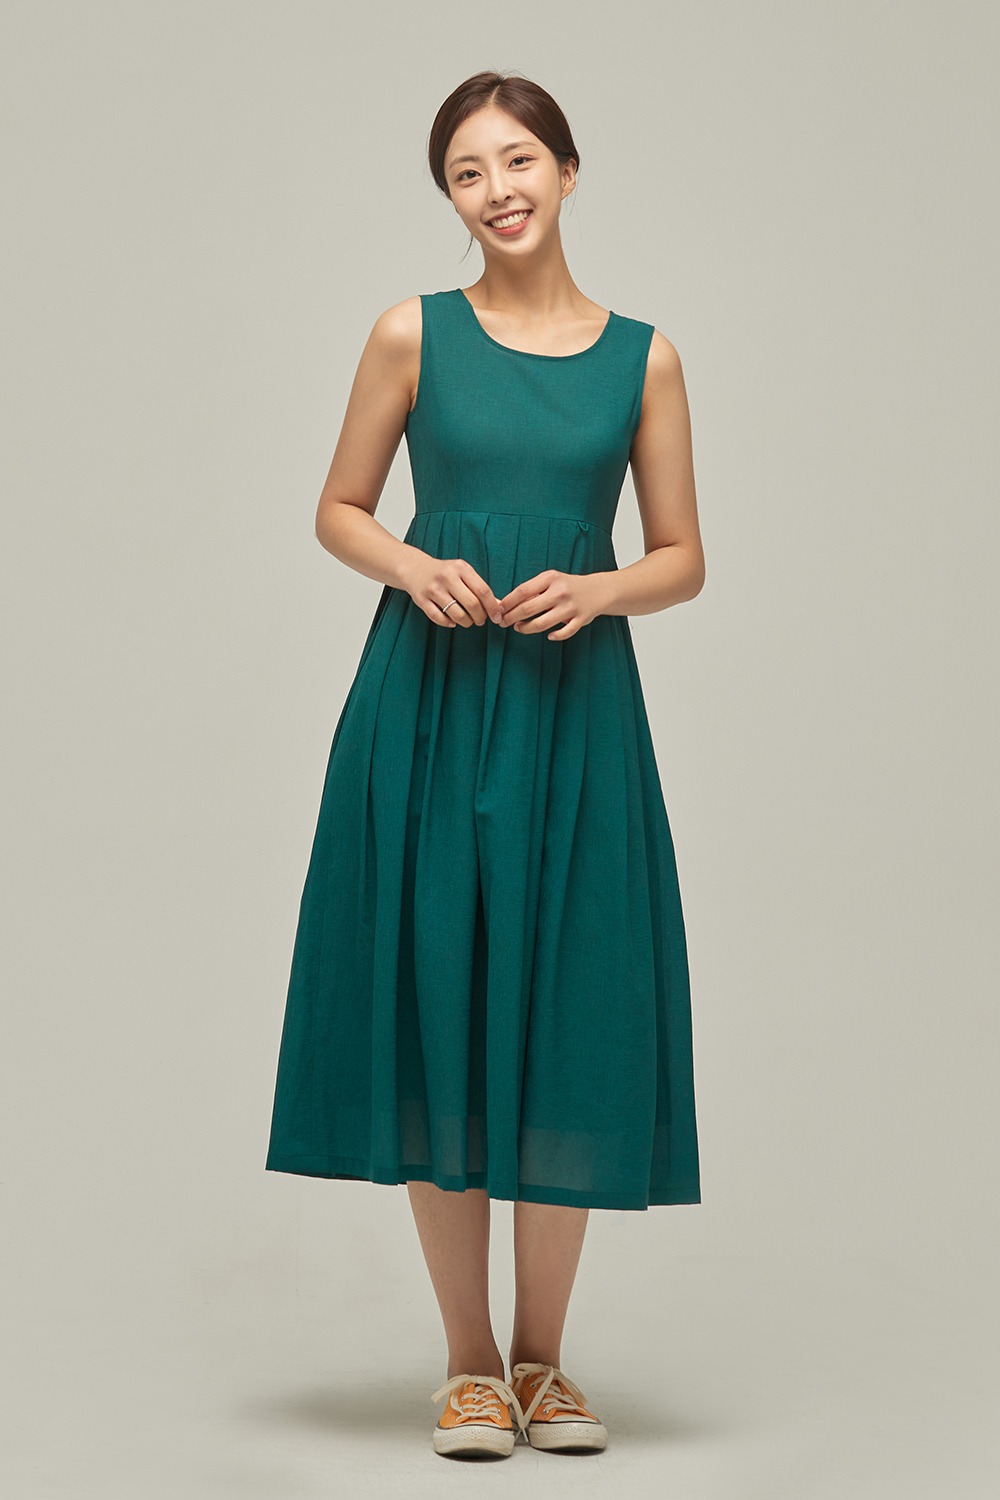 Light Dress 2 [Emerald]